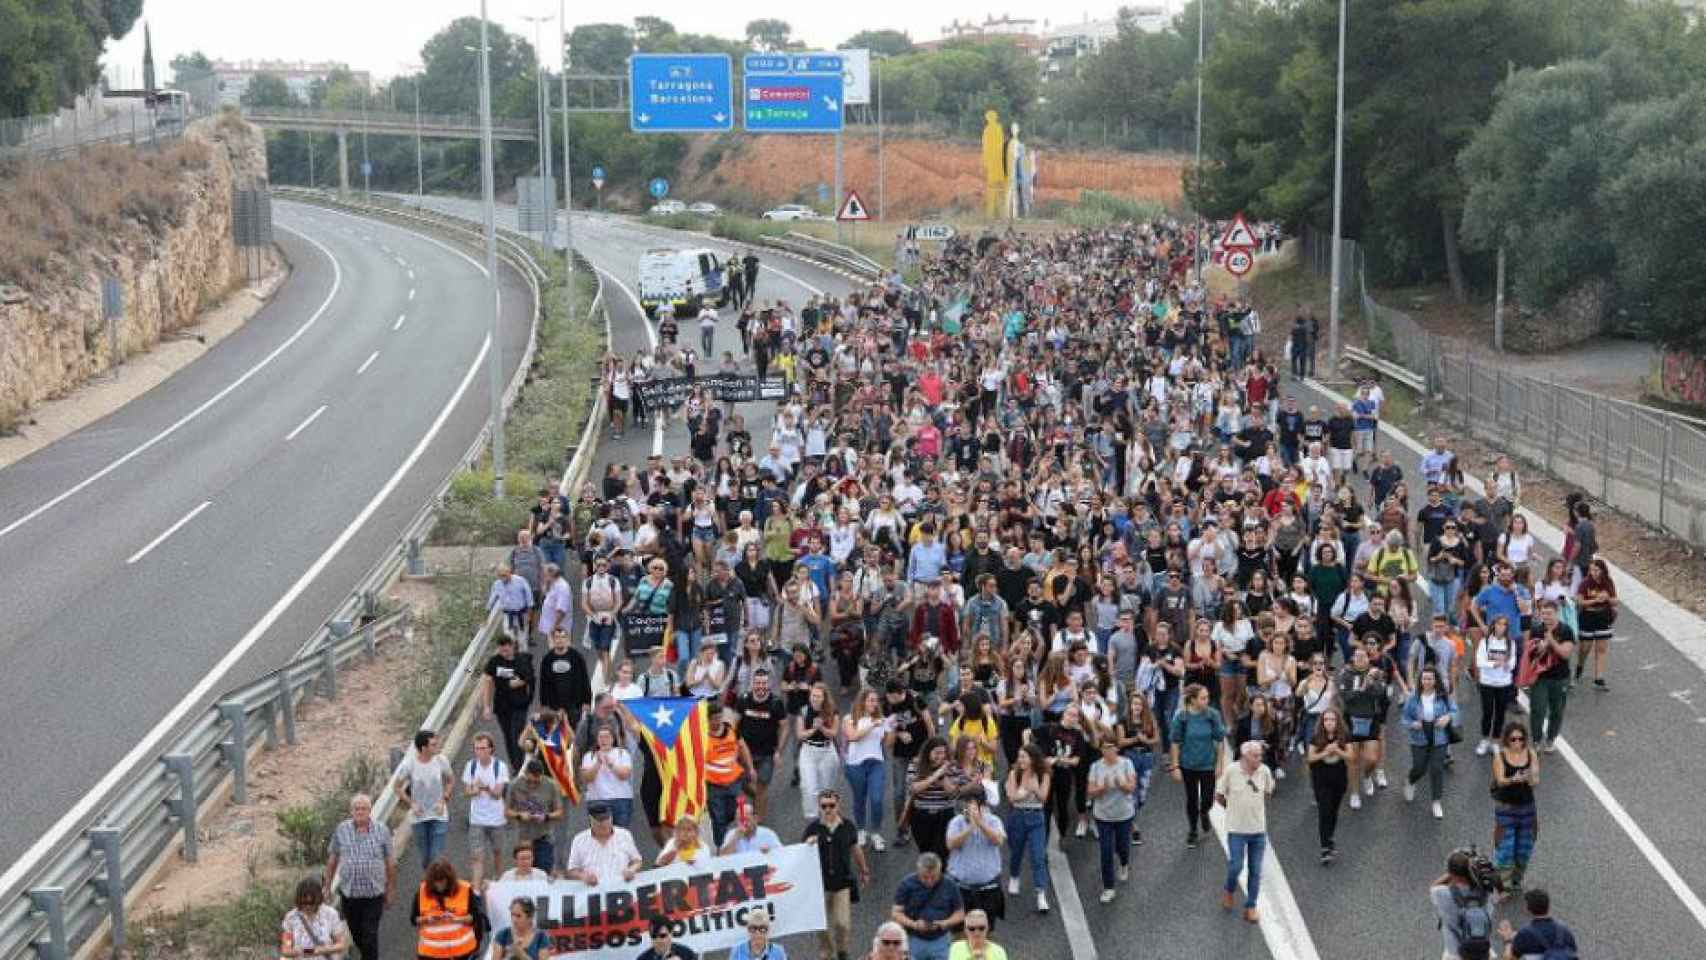 Manifestantes cortan el tráfico por carretera contra la condena del 1-O / EFE